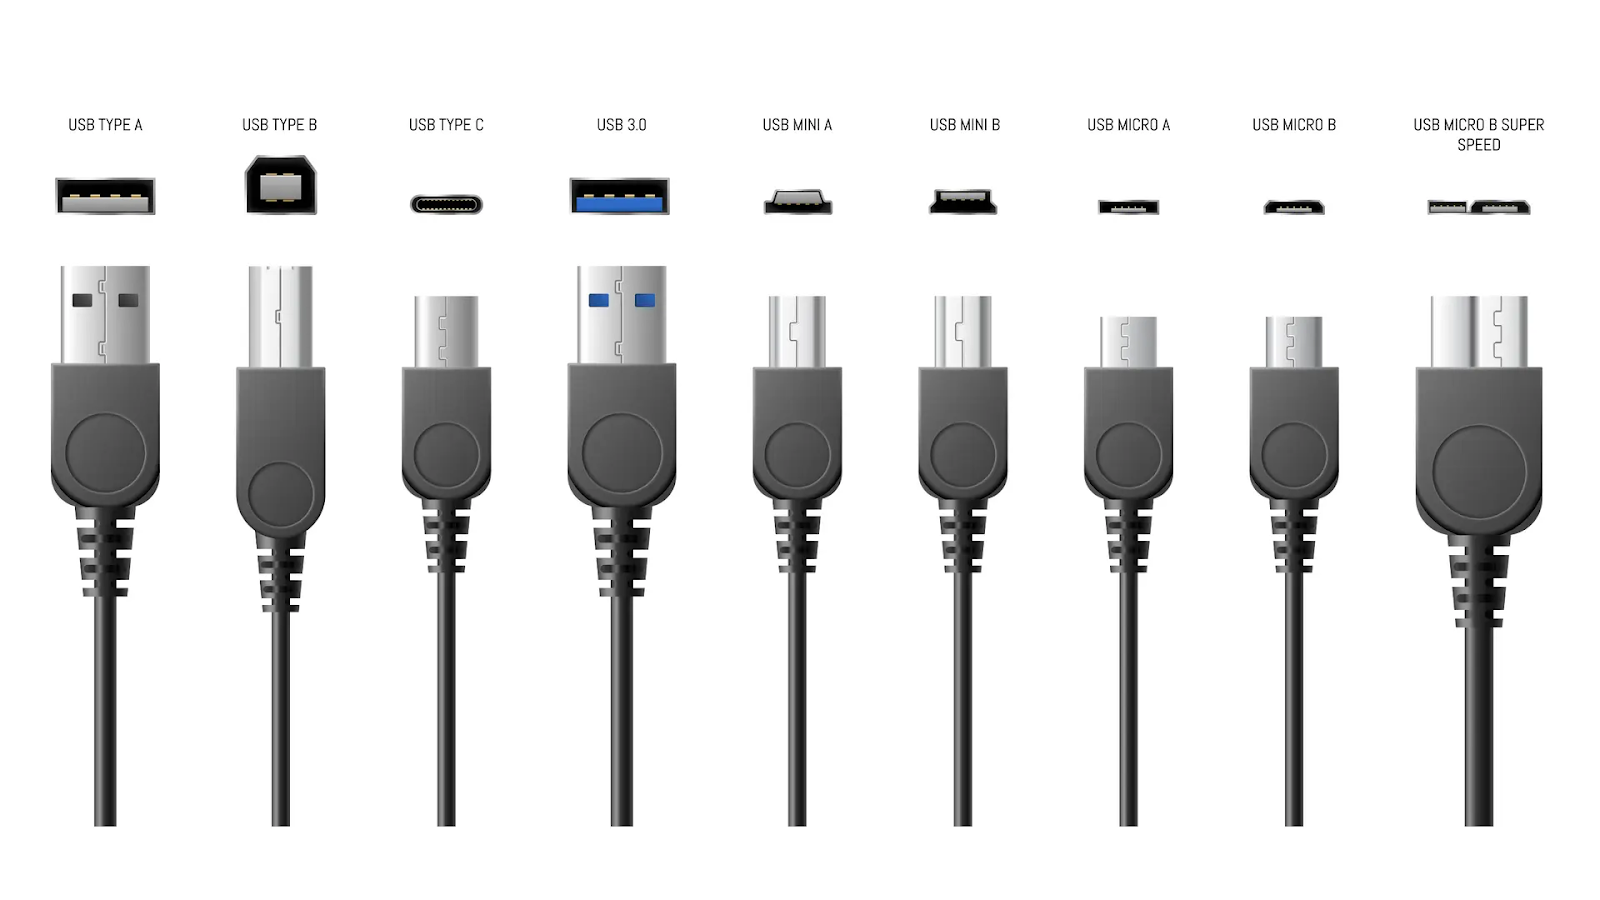 USB là gì? Hình ảnh so sánh các loại USB theo chuẩn kết nối